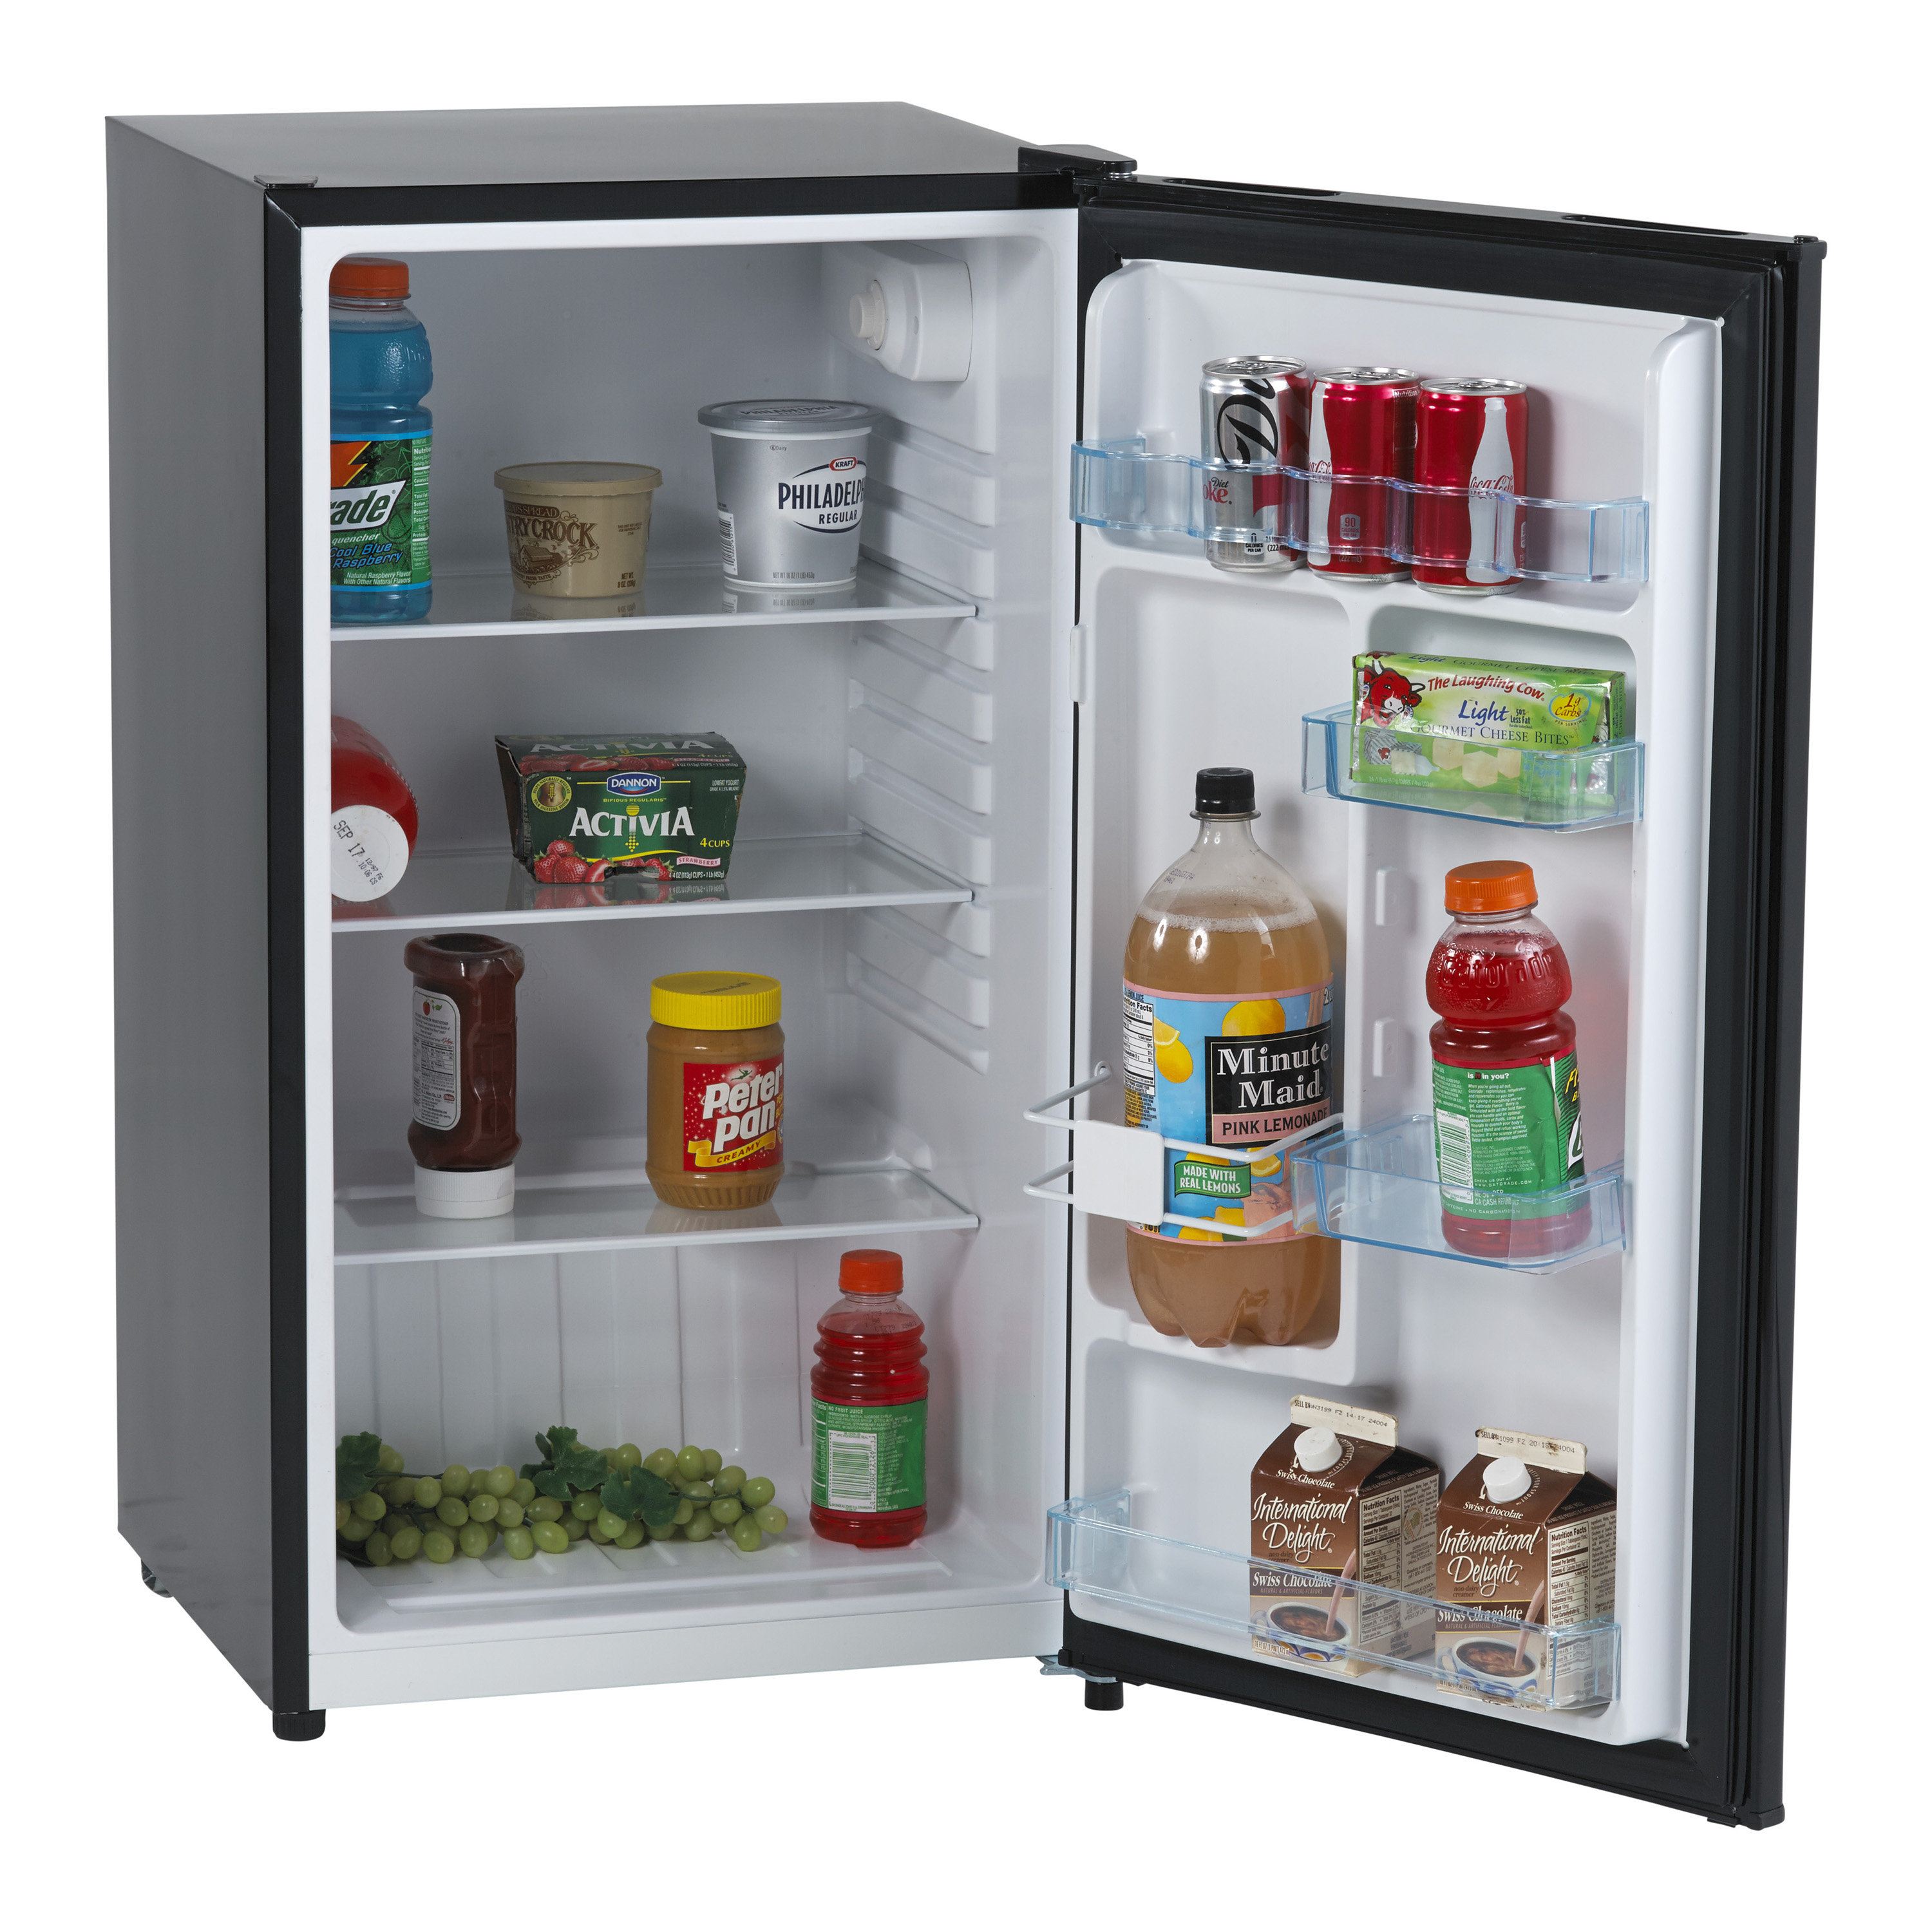 https://assets.wfcdn.com/im/07780879/compr-r85/2250/225038384/avanti-32-cu-ft-compact-refrigerator.jpg